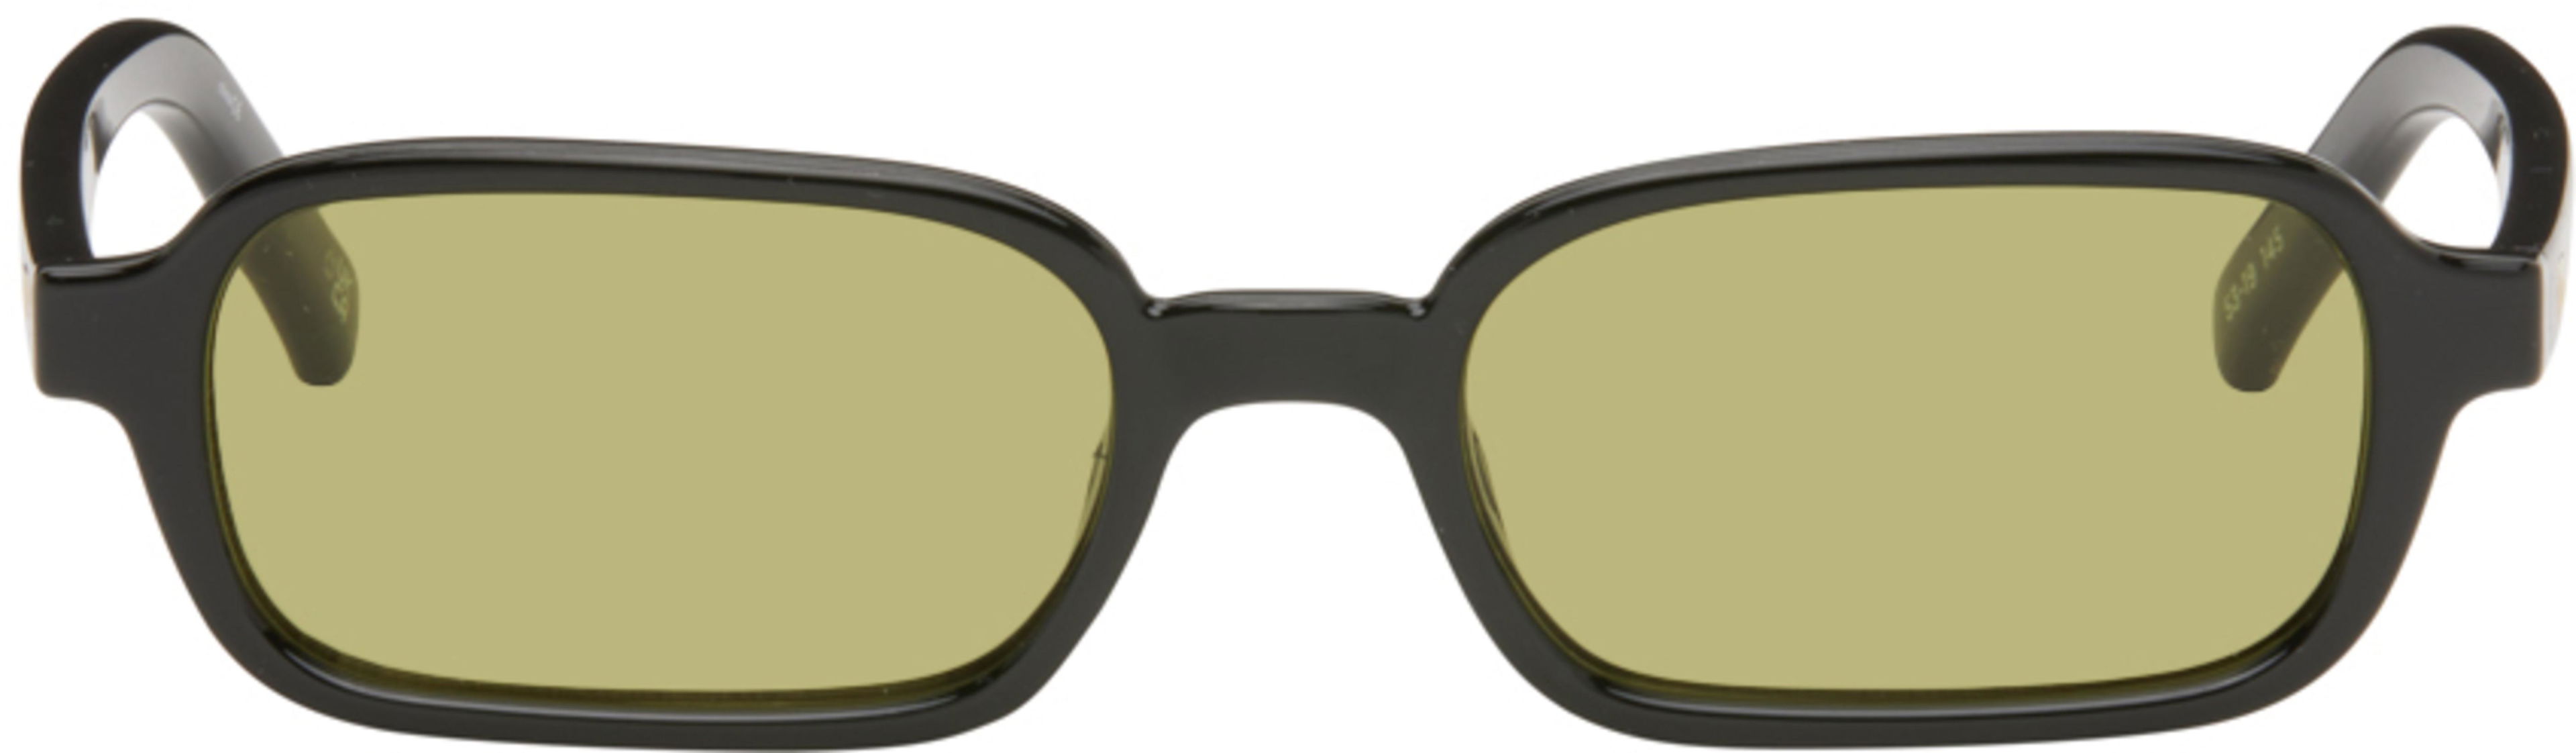 Black Pilferer Sunglasses by LE SPECS